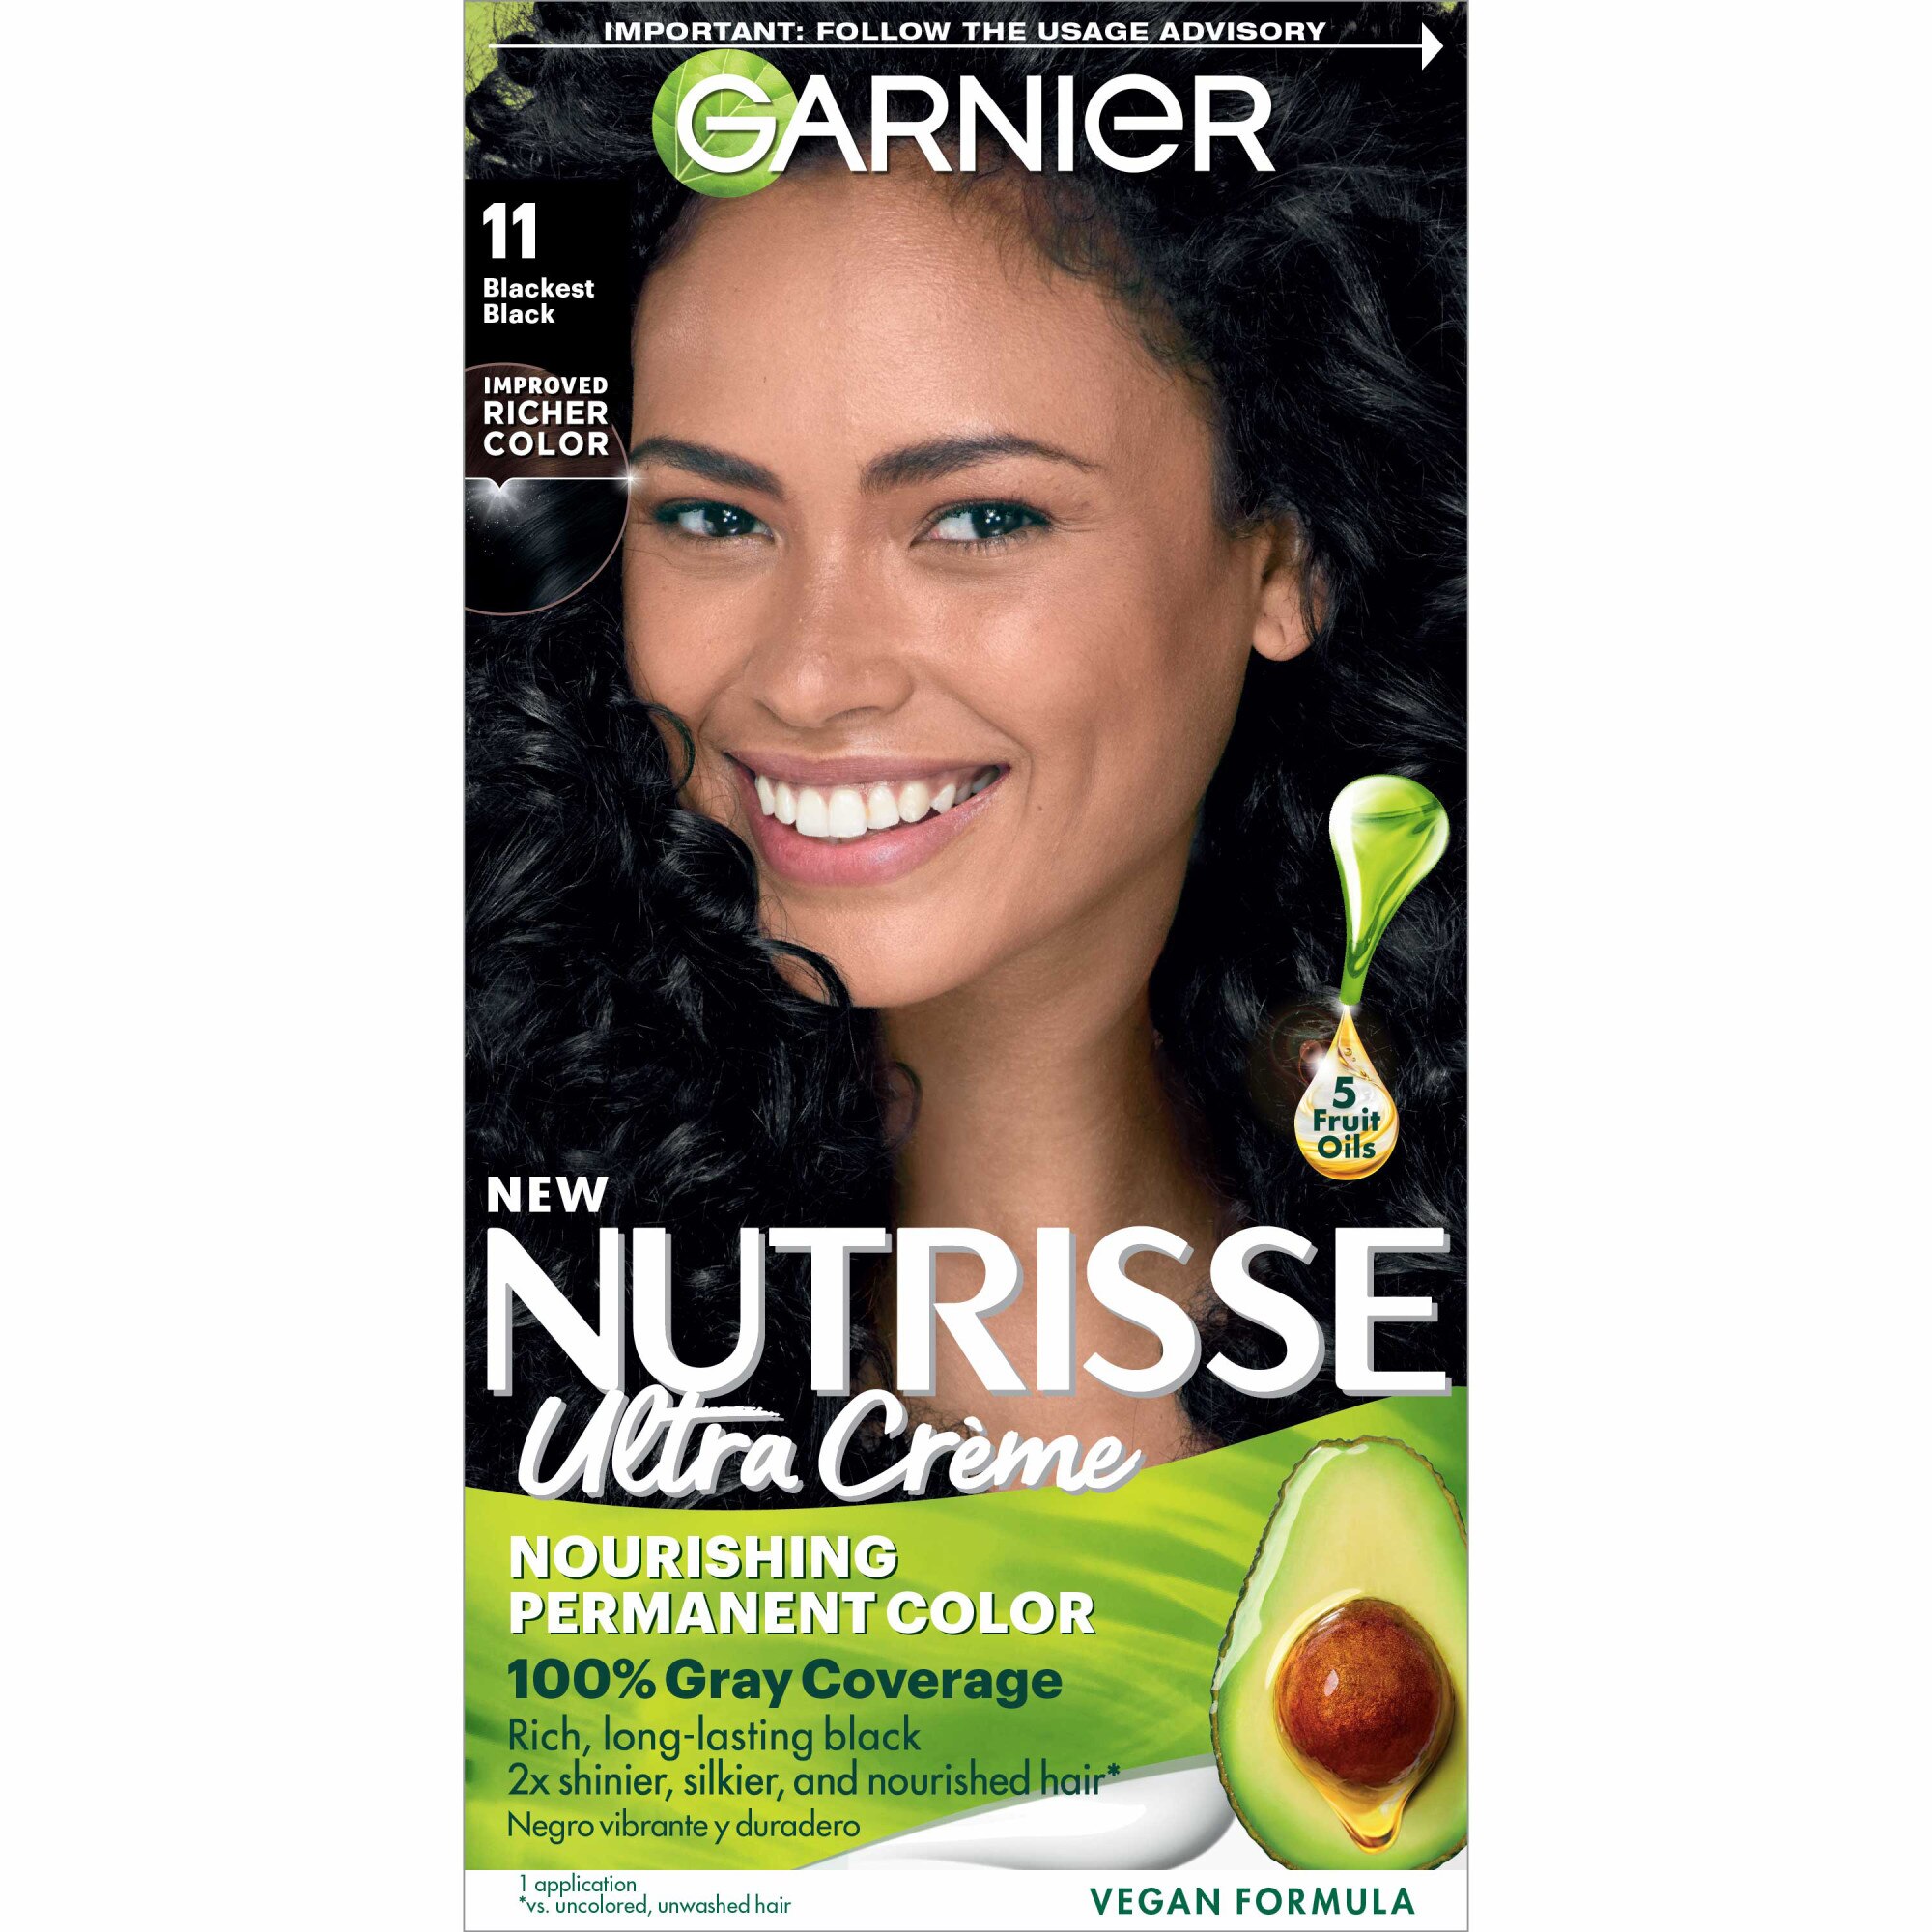 Garnier Nutrisse Nourishing Permanent Hair Color Creme, 11 Blackest Black , CVS